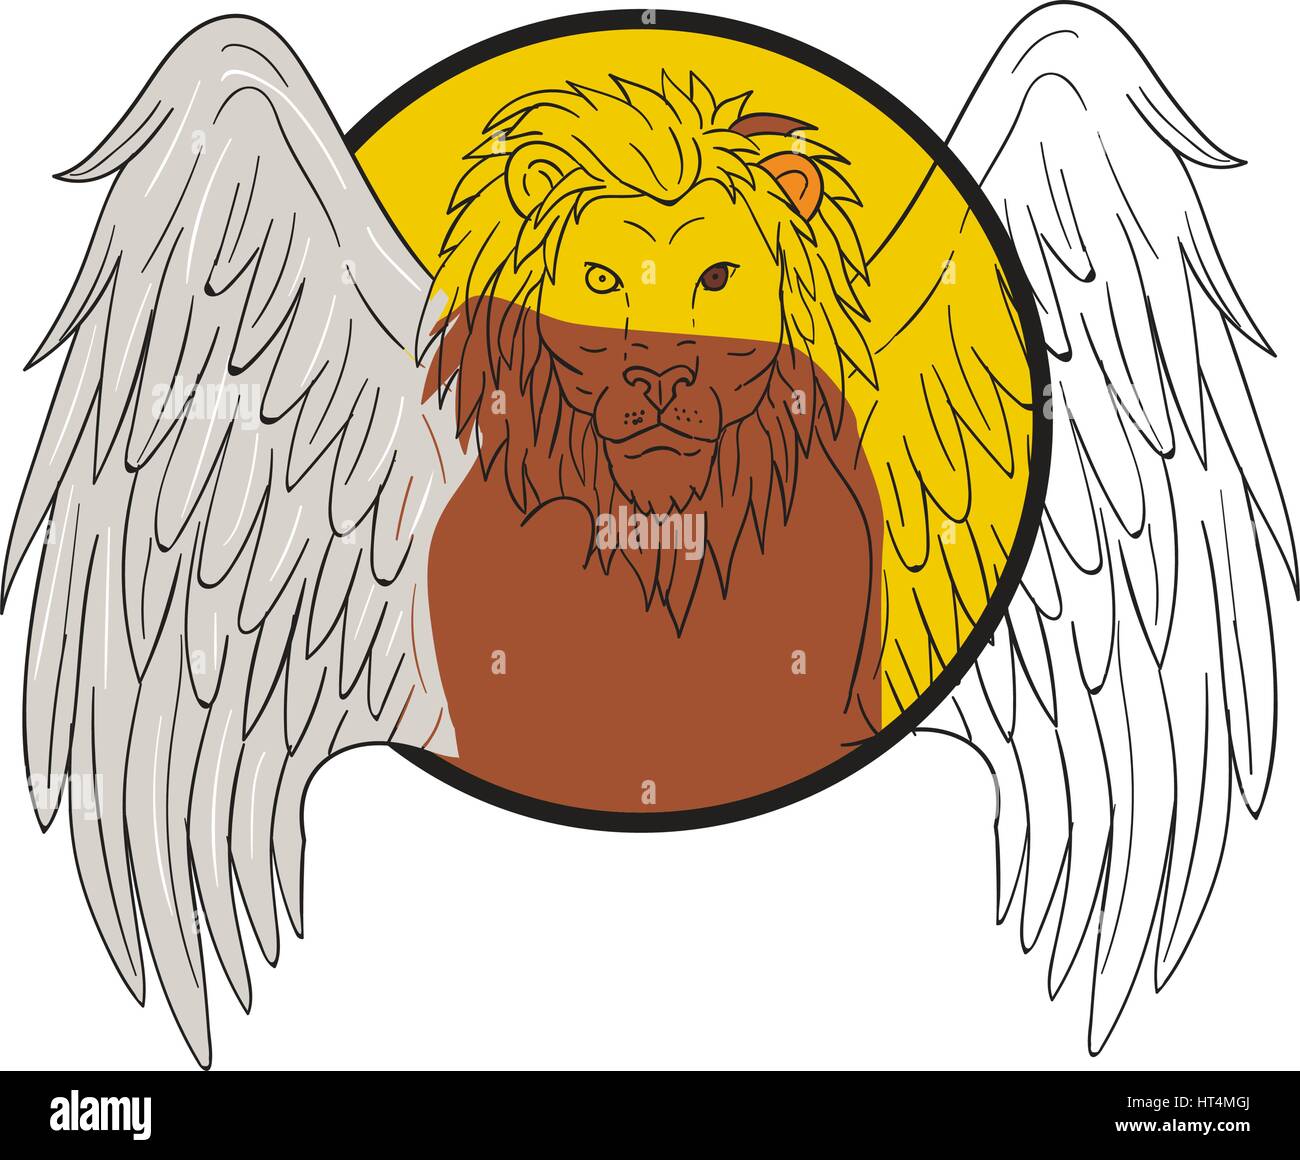 Disegno stile sketch illustrazione di un leone alato big cat o il leone di San Marco testa visto dalla parte anteriore impostato all'interno del cerchio. Illustrazione Vettoriale